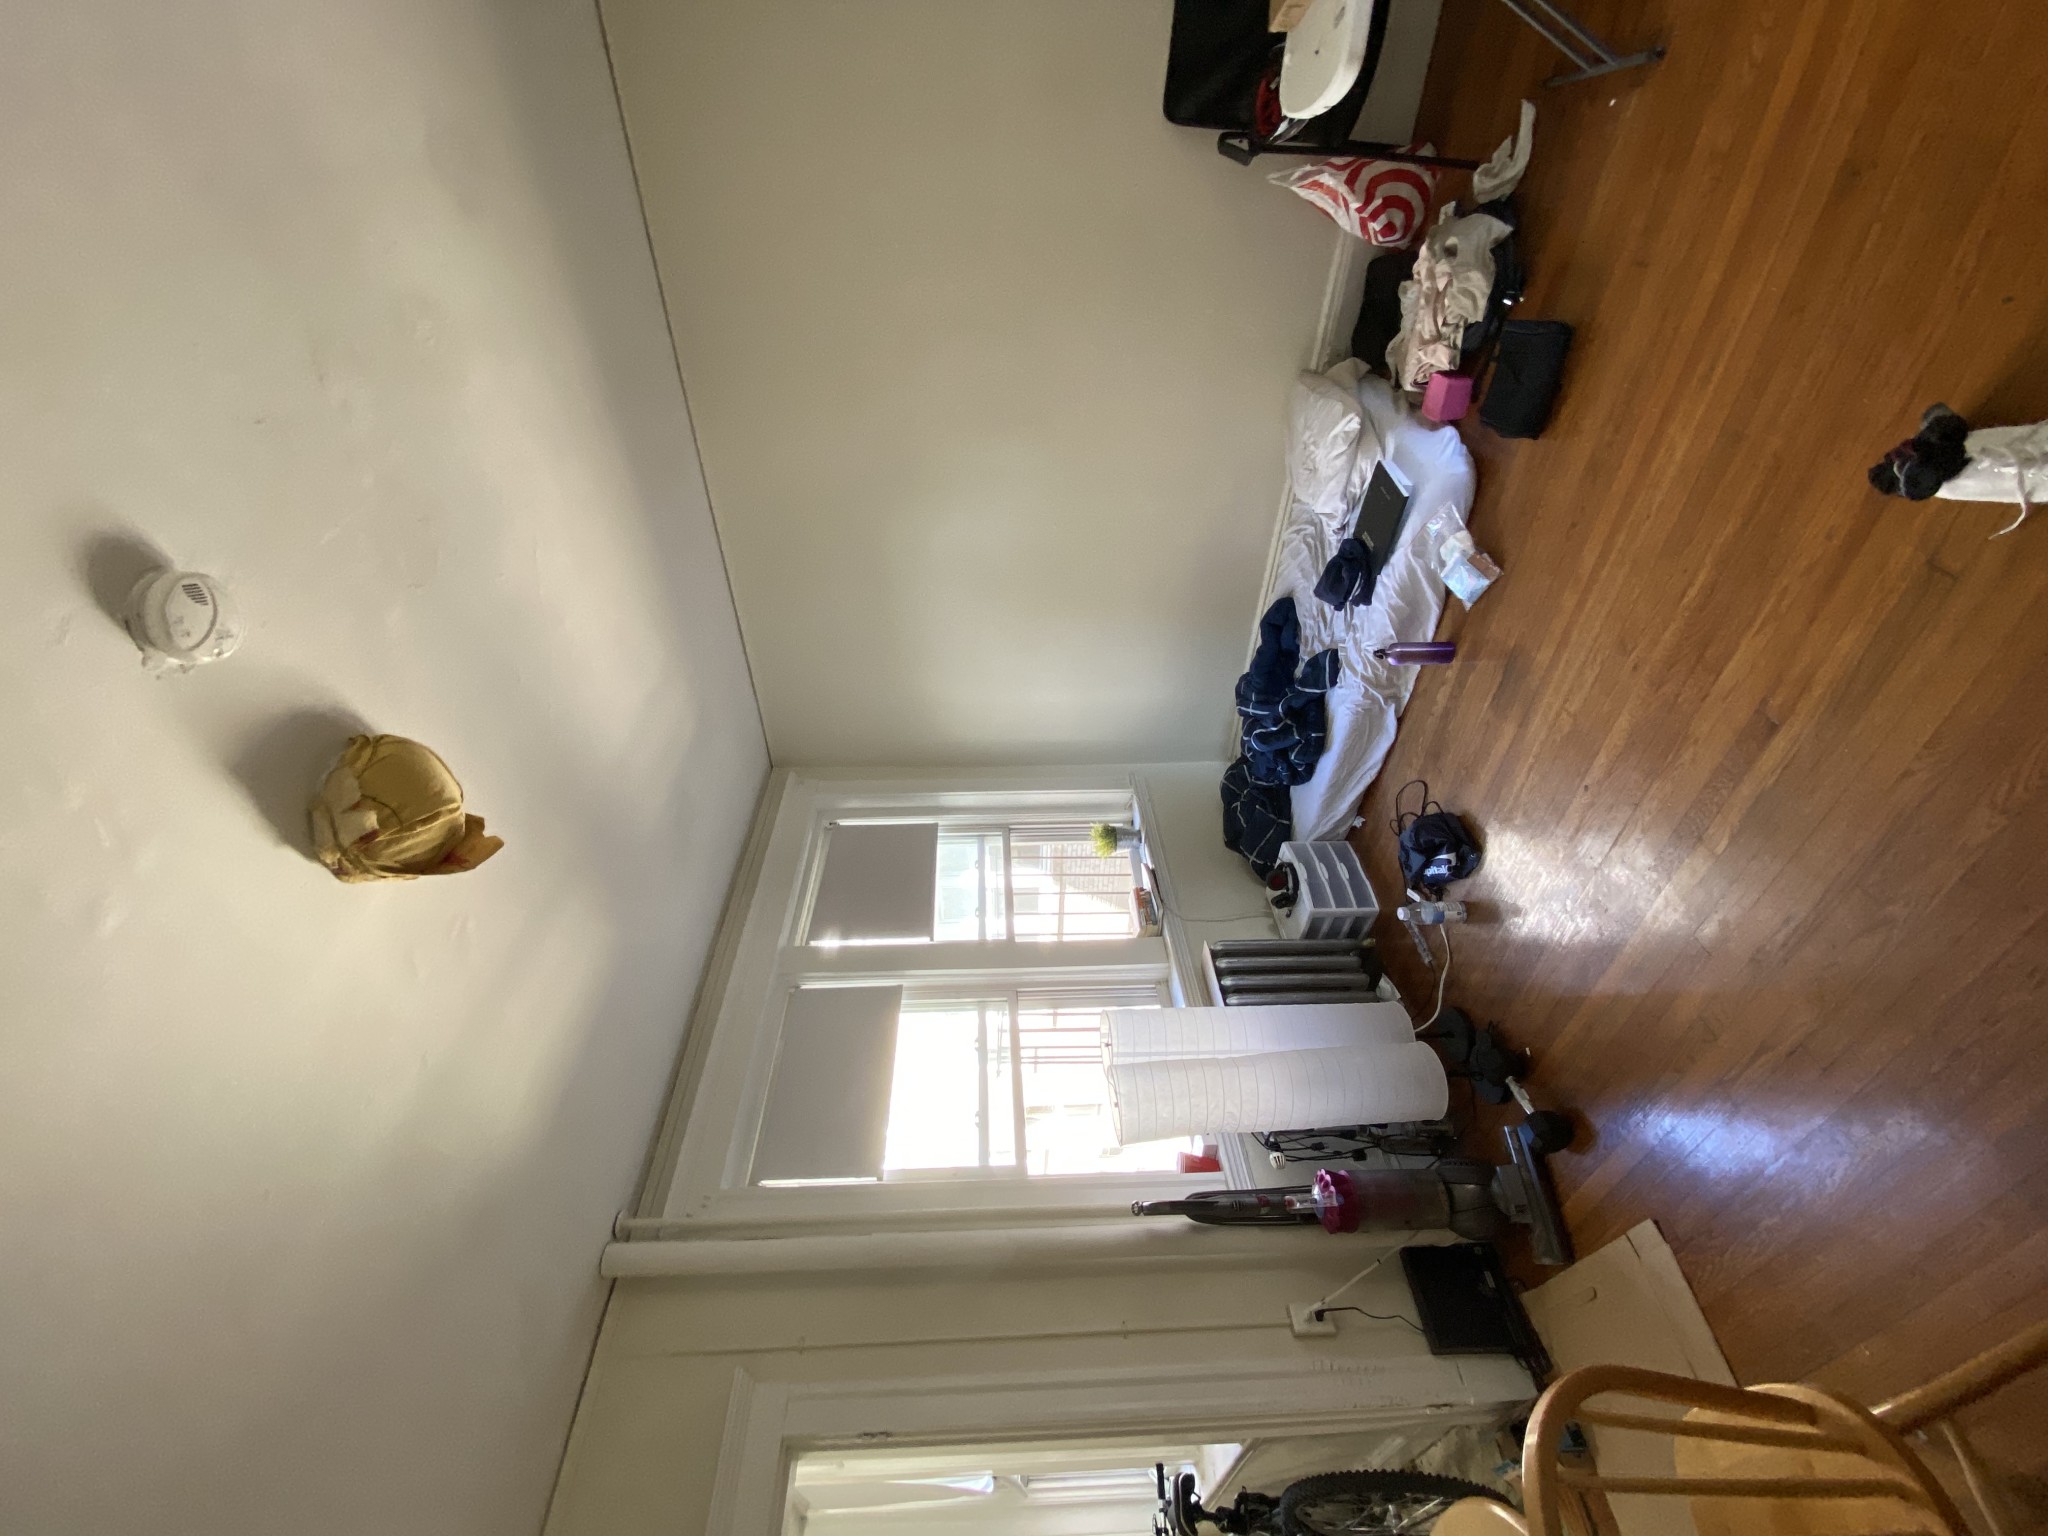 Photos of apartment on Peterborough St.,Boston MA 02215